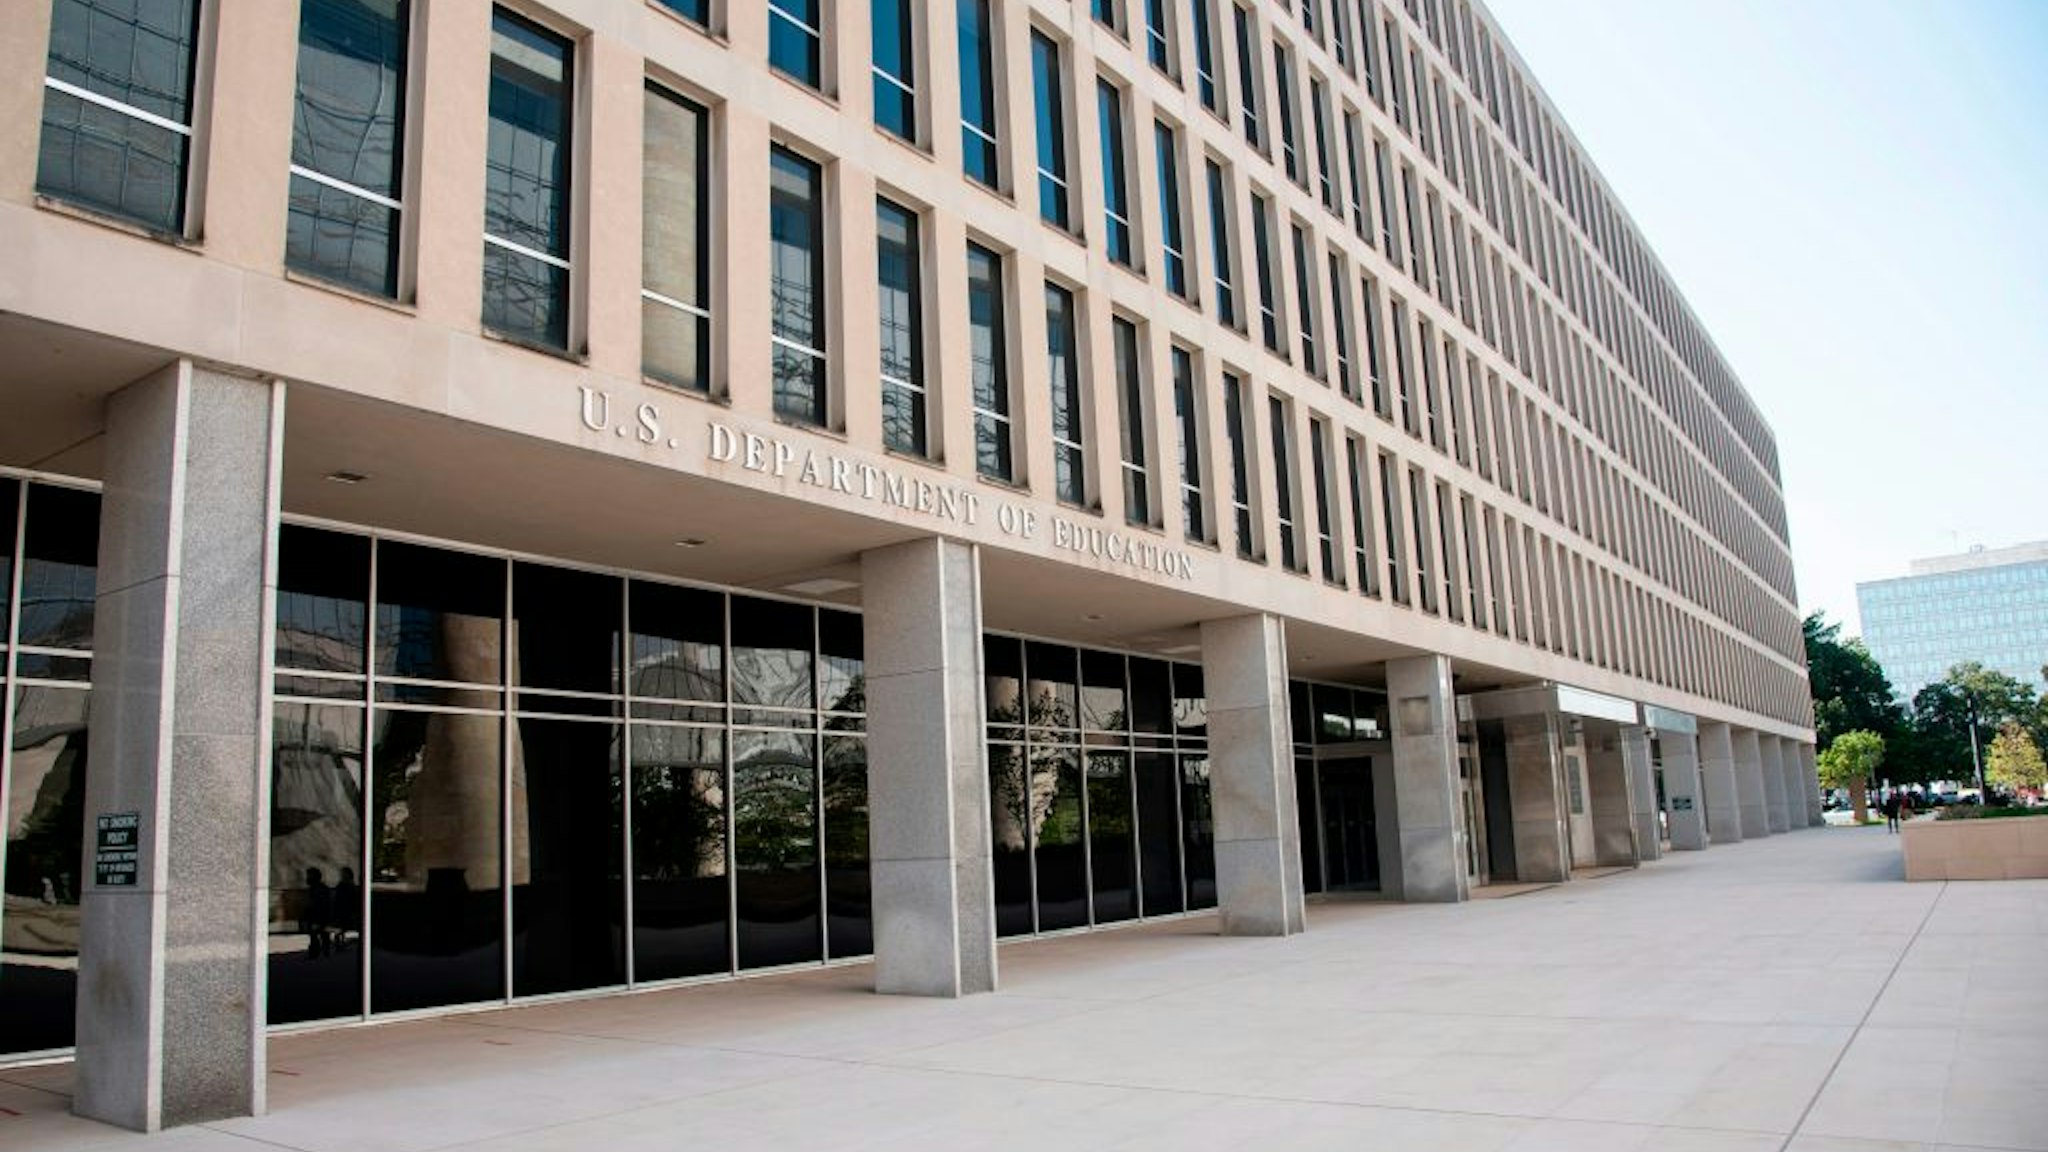 Department of Education building, Washington, D.C..